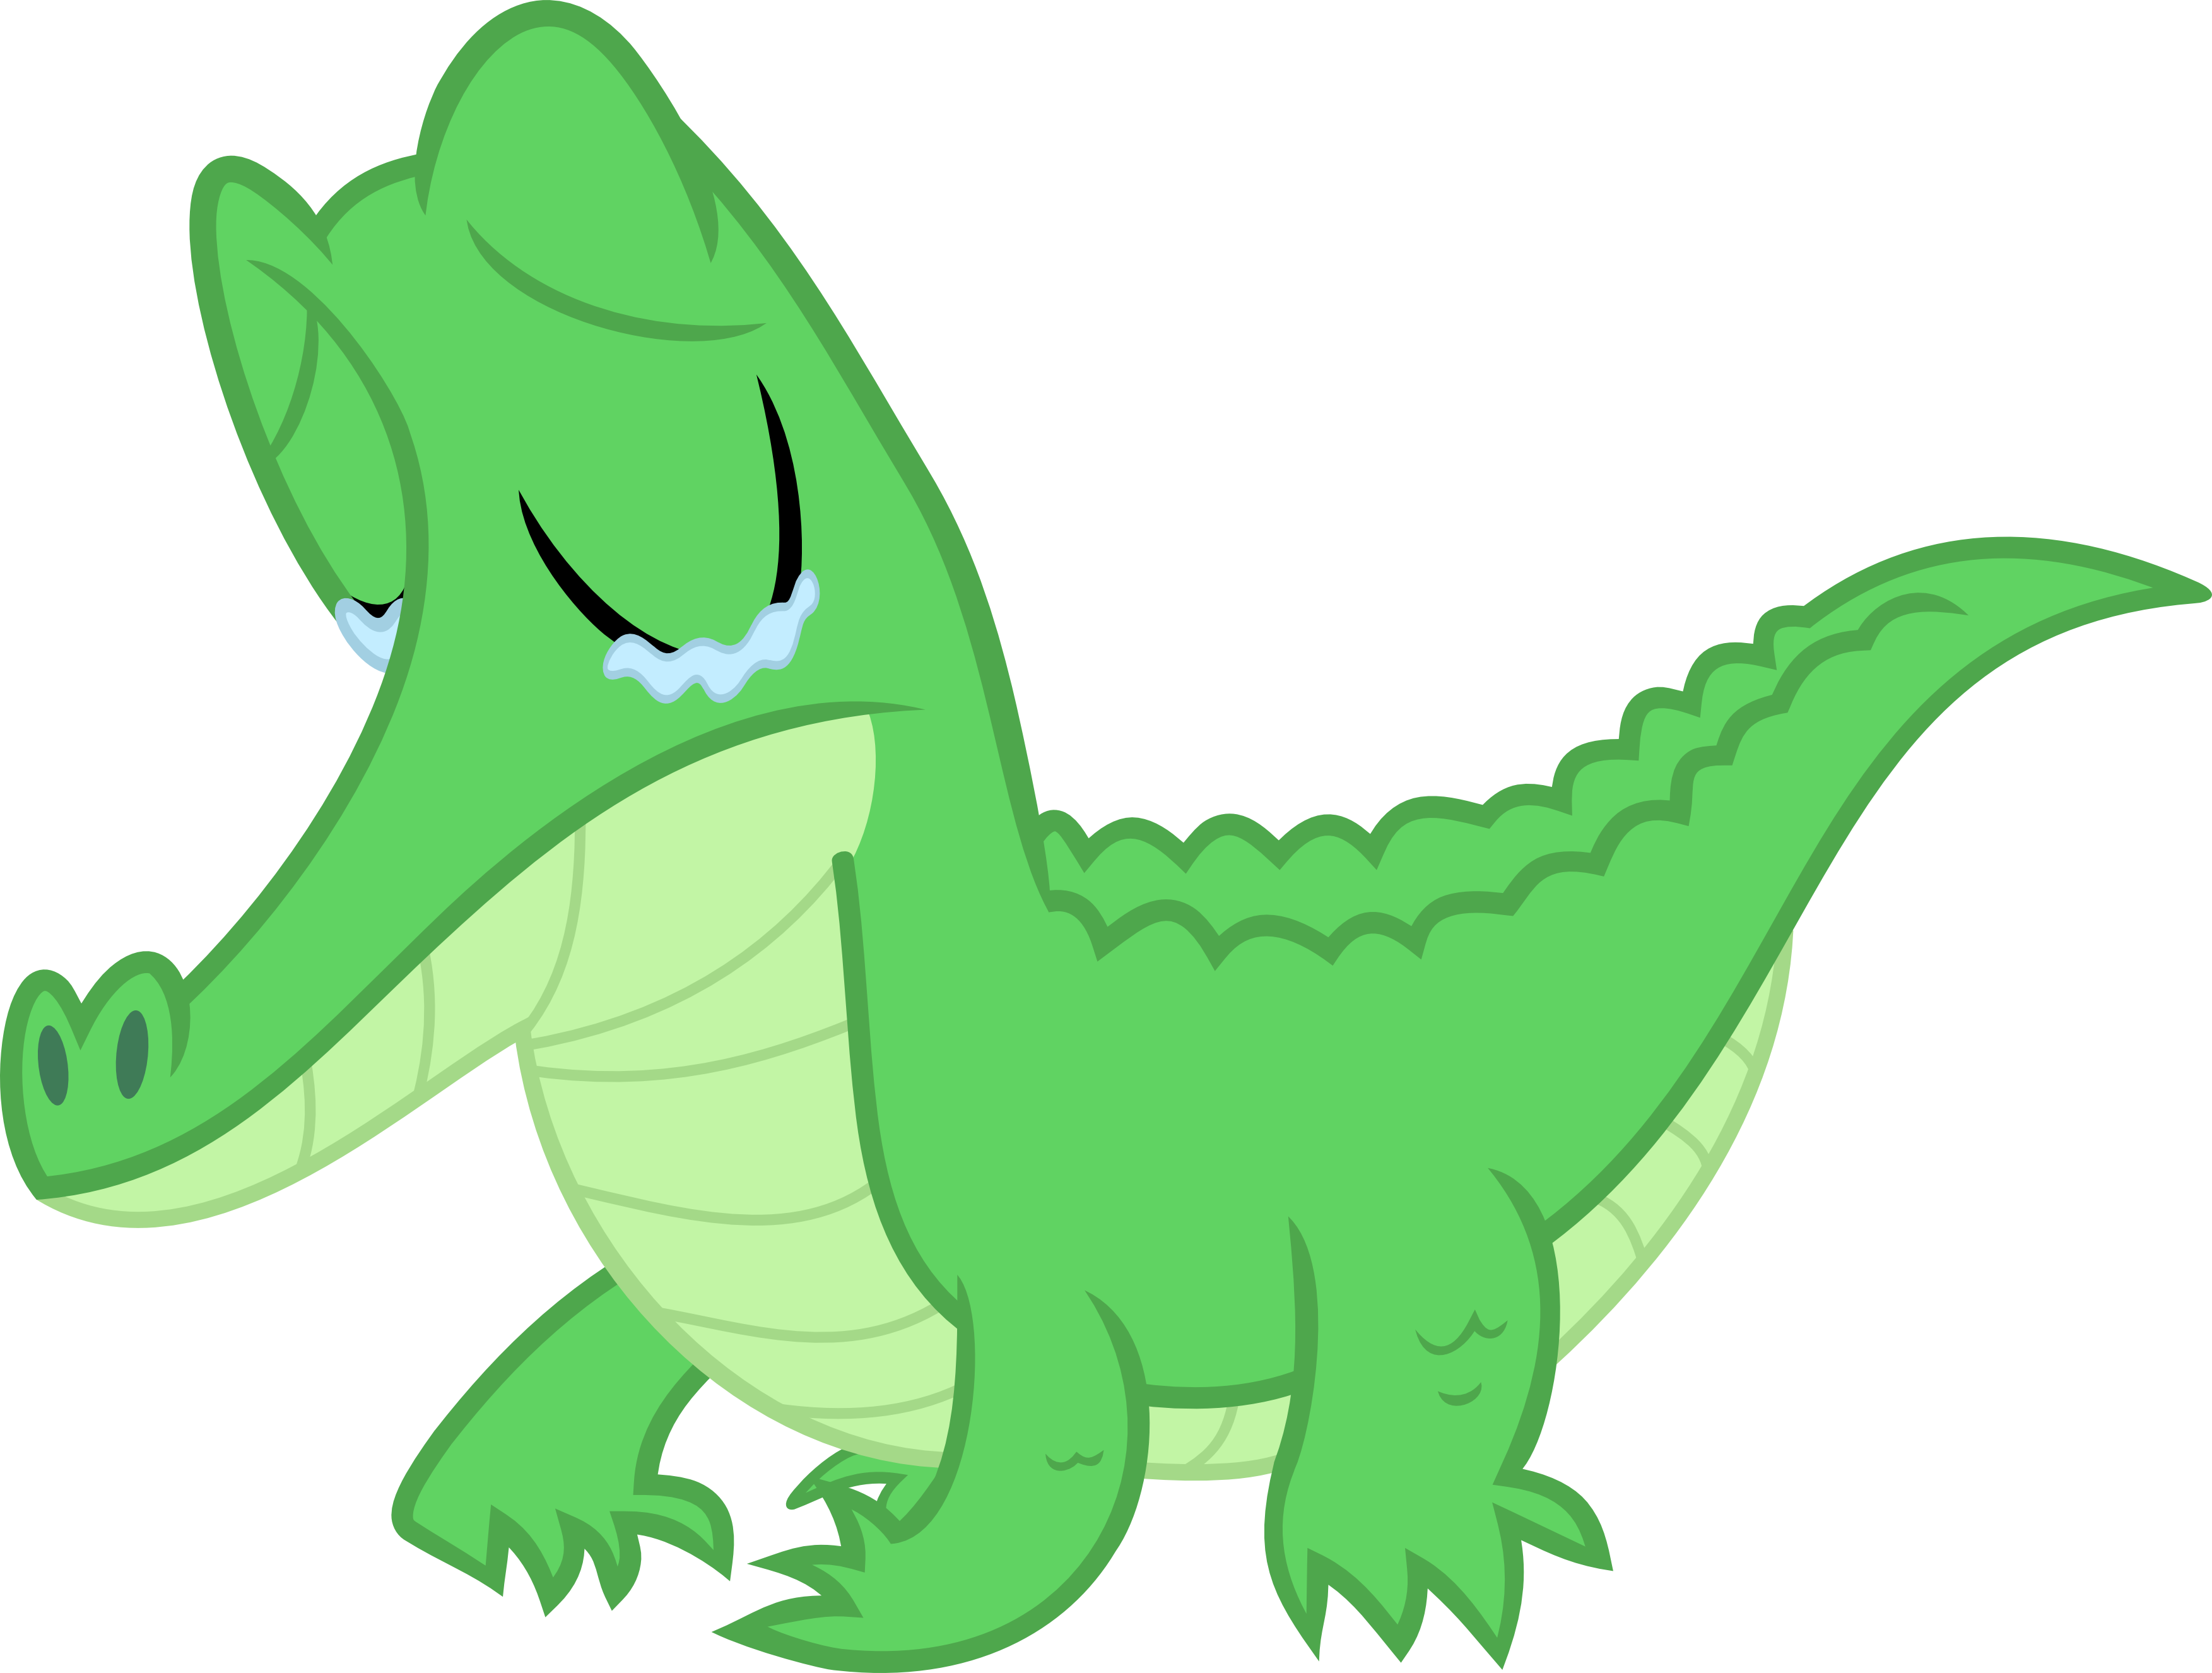 A Sad Little Gator By Porygon2z A Sad Little Gator - Sad Crocodile Cartoon (3506x2651)